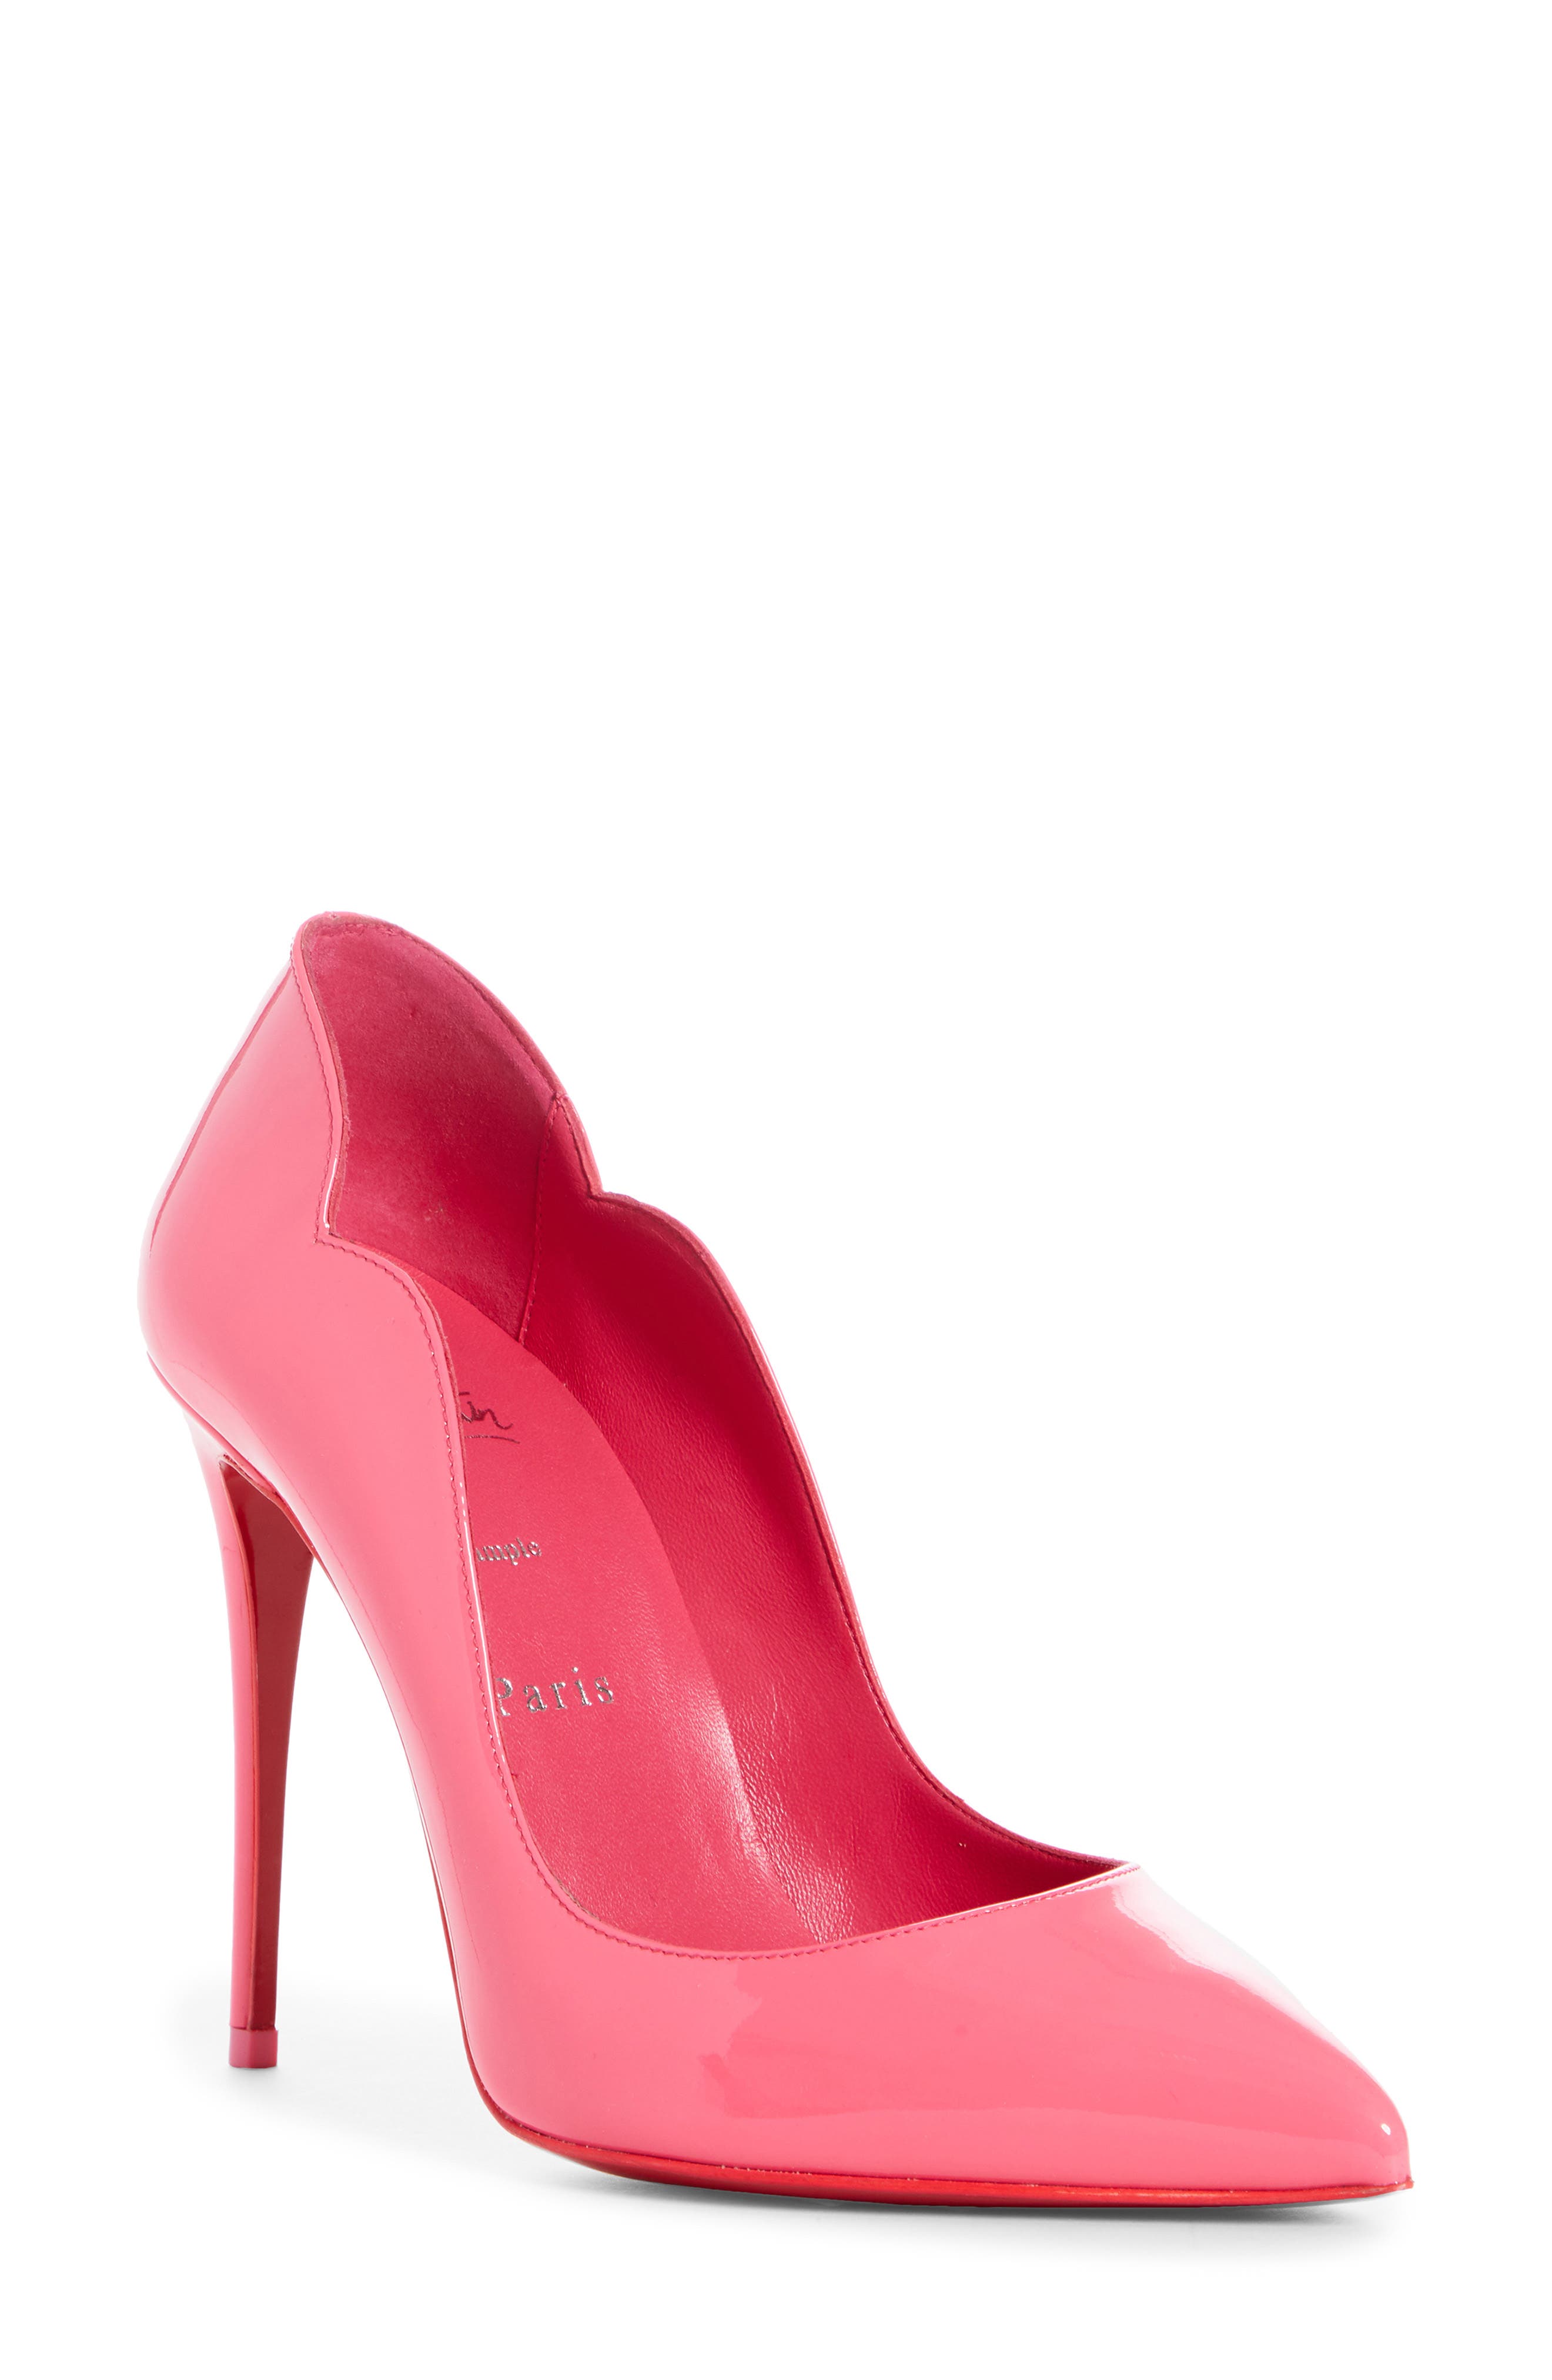 Designer Shoes: Heels \u0026 Pumps | Nordstrom